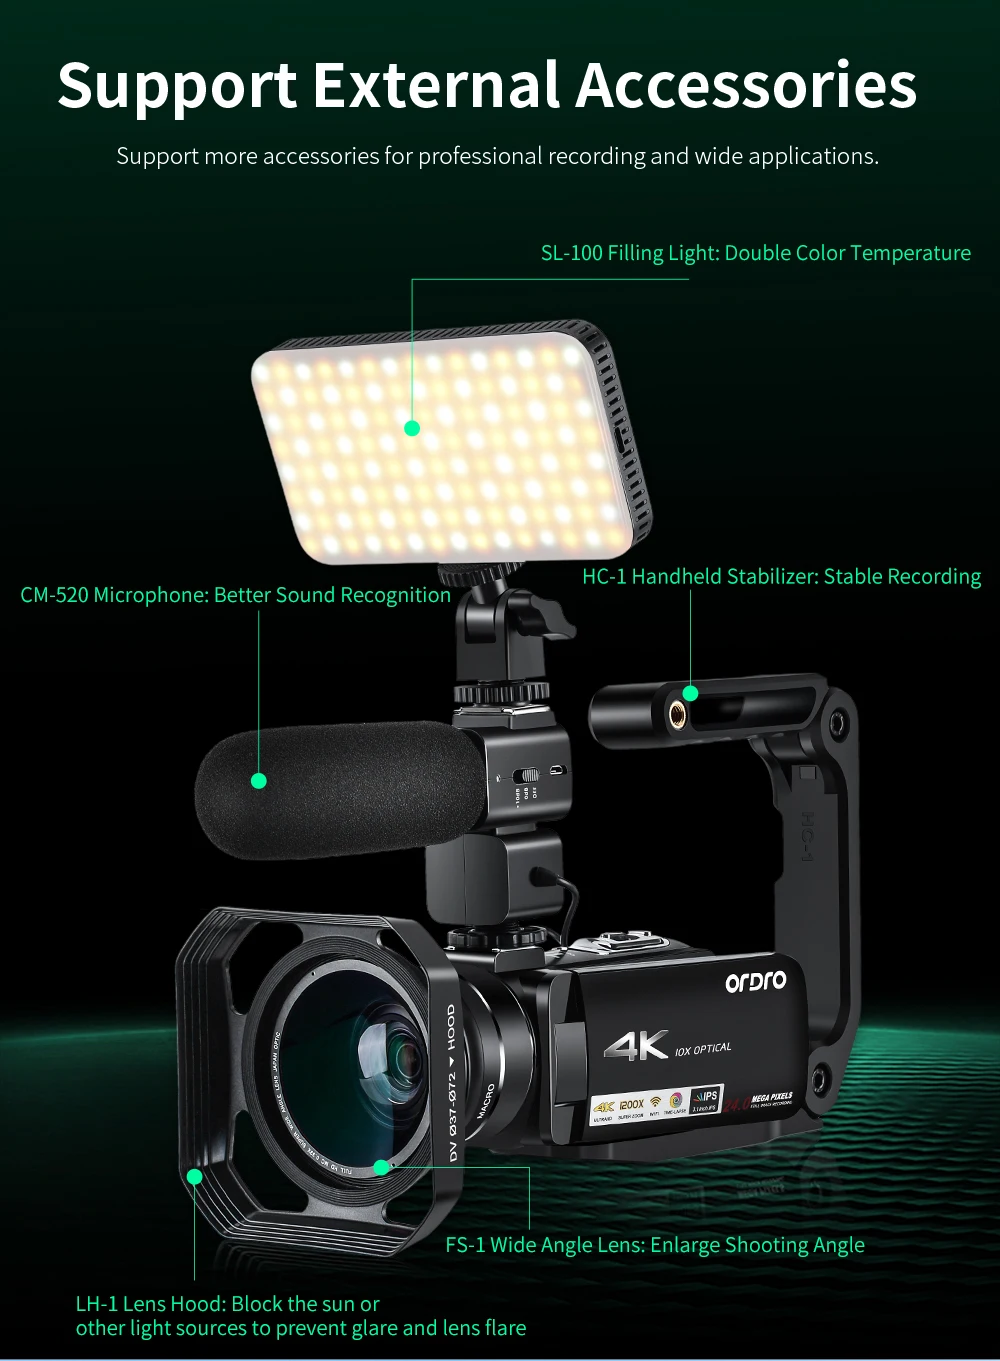 Ordro HDR-AC7 4K UHD видеокамера 10x оптический зум 3,1 ''ips Wi-Fi камера рекордер поддержка микрофона широкоугольный объектив 24mp